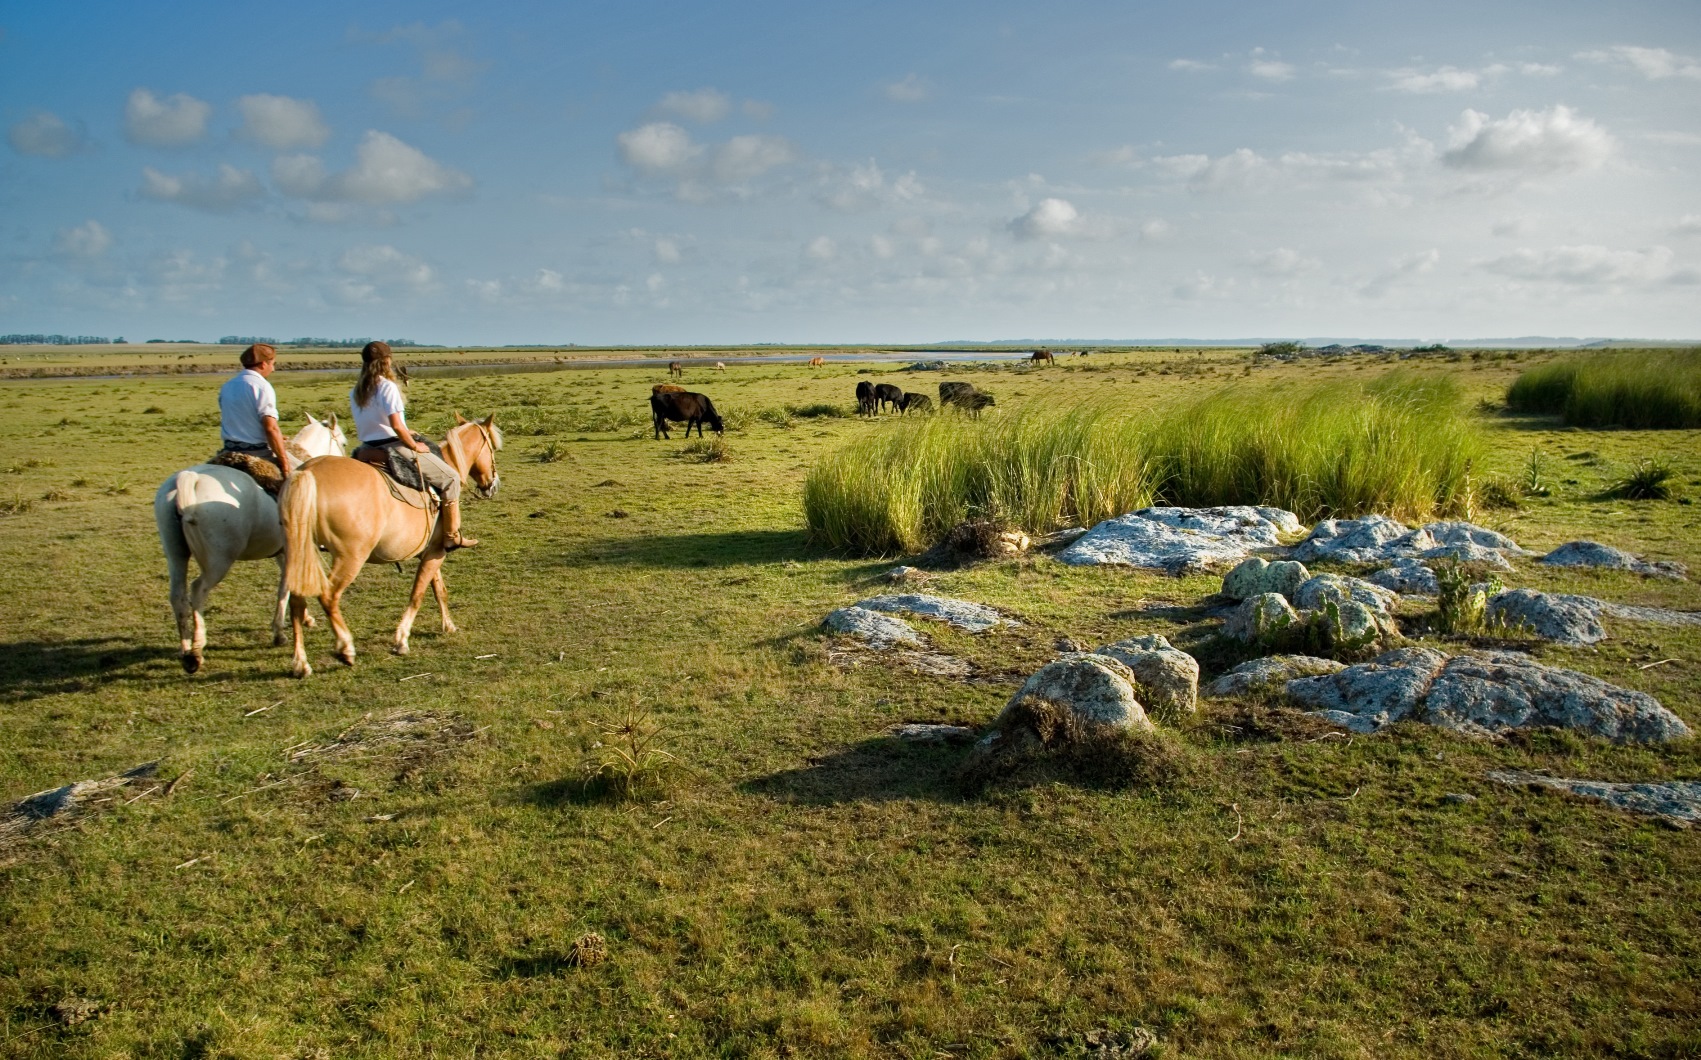 Two horse riders near Estancia, Uruguay